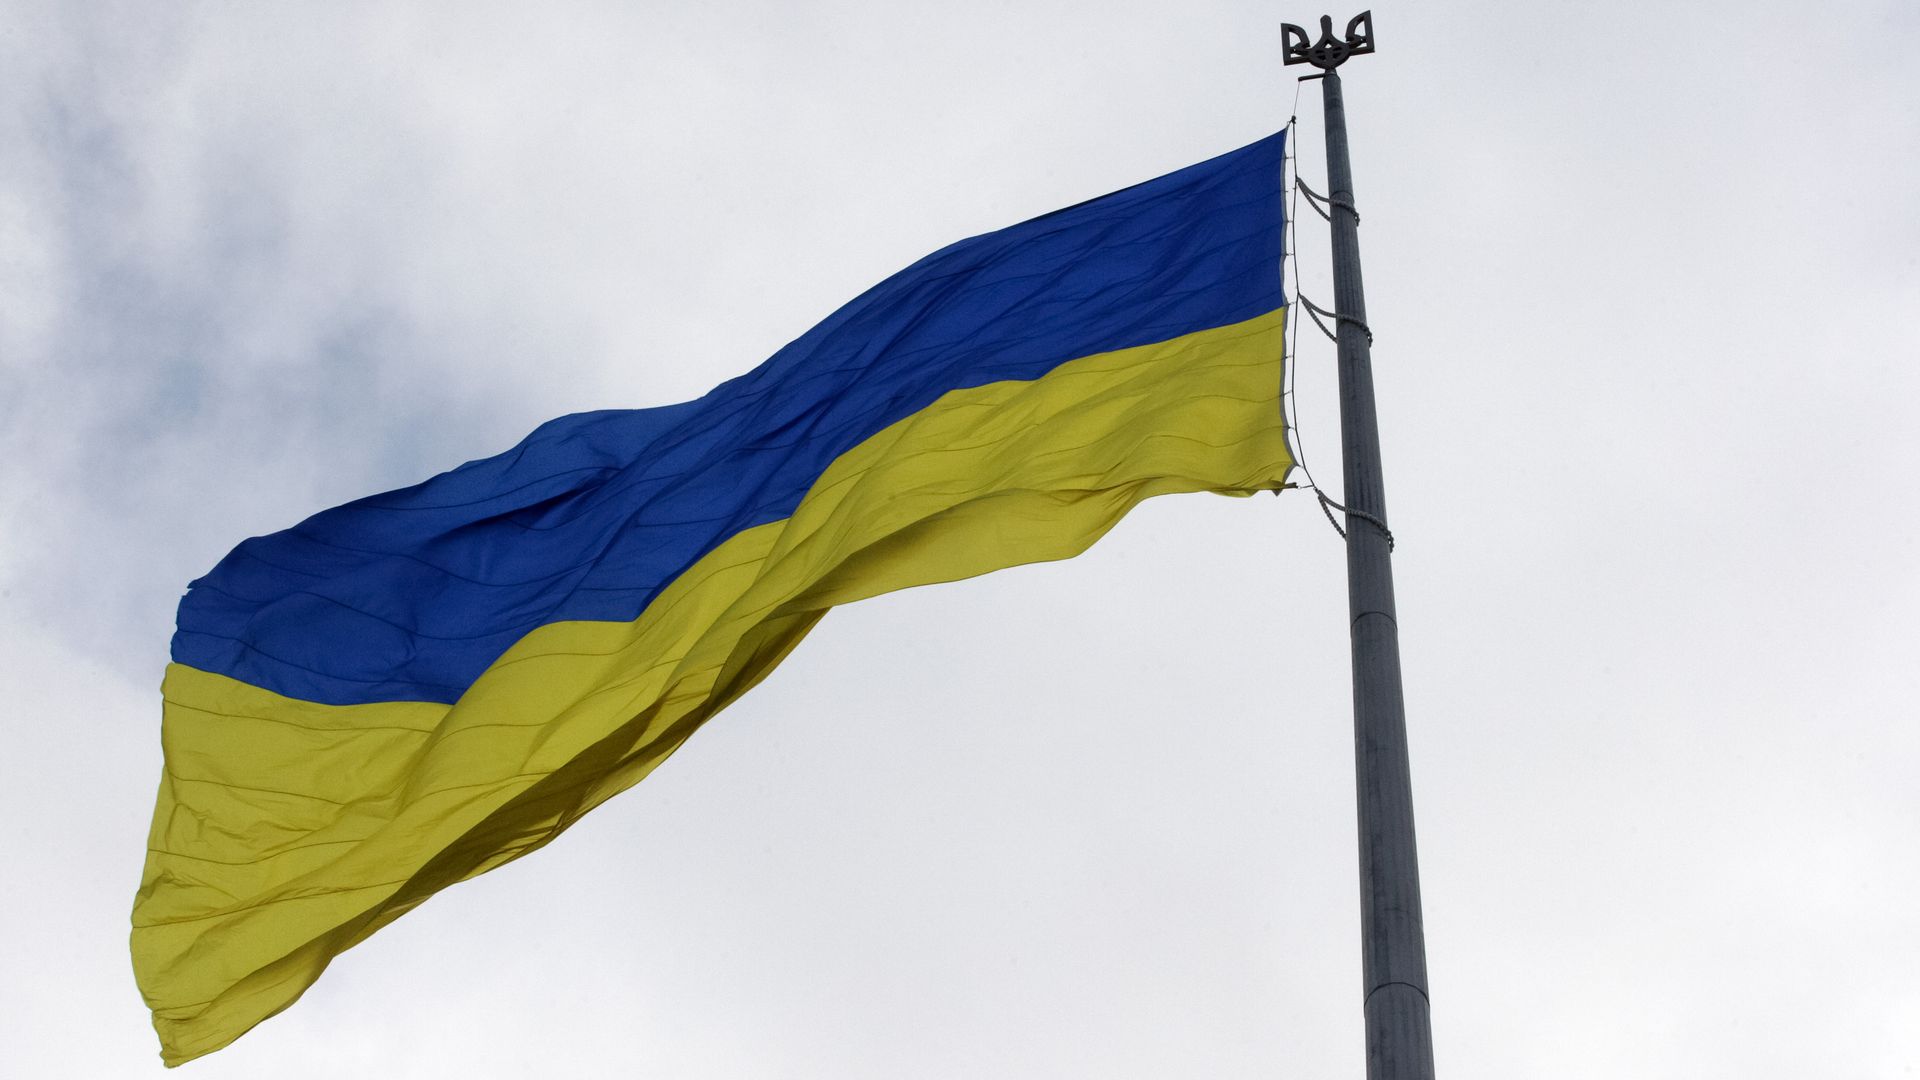 An image of the Ukrainian flag against an overcast sky.